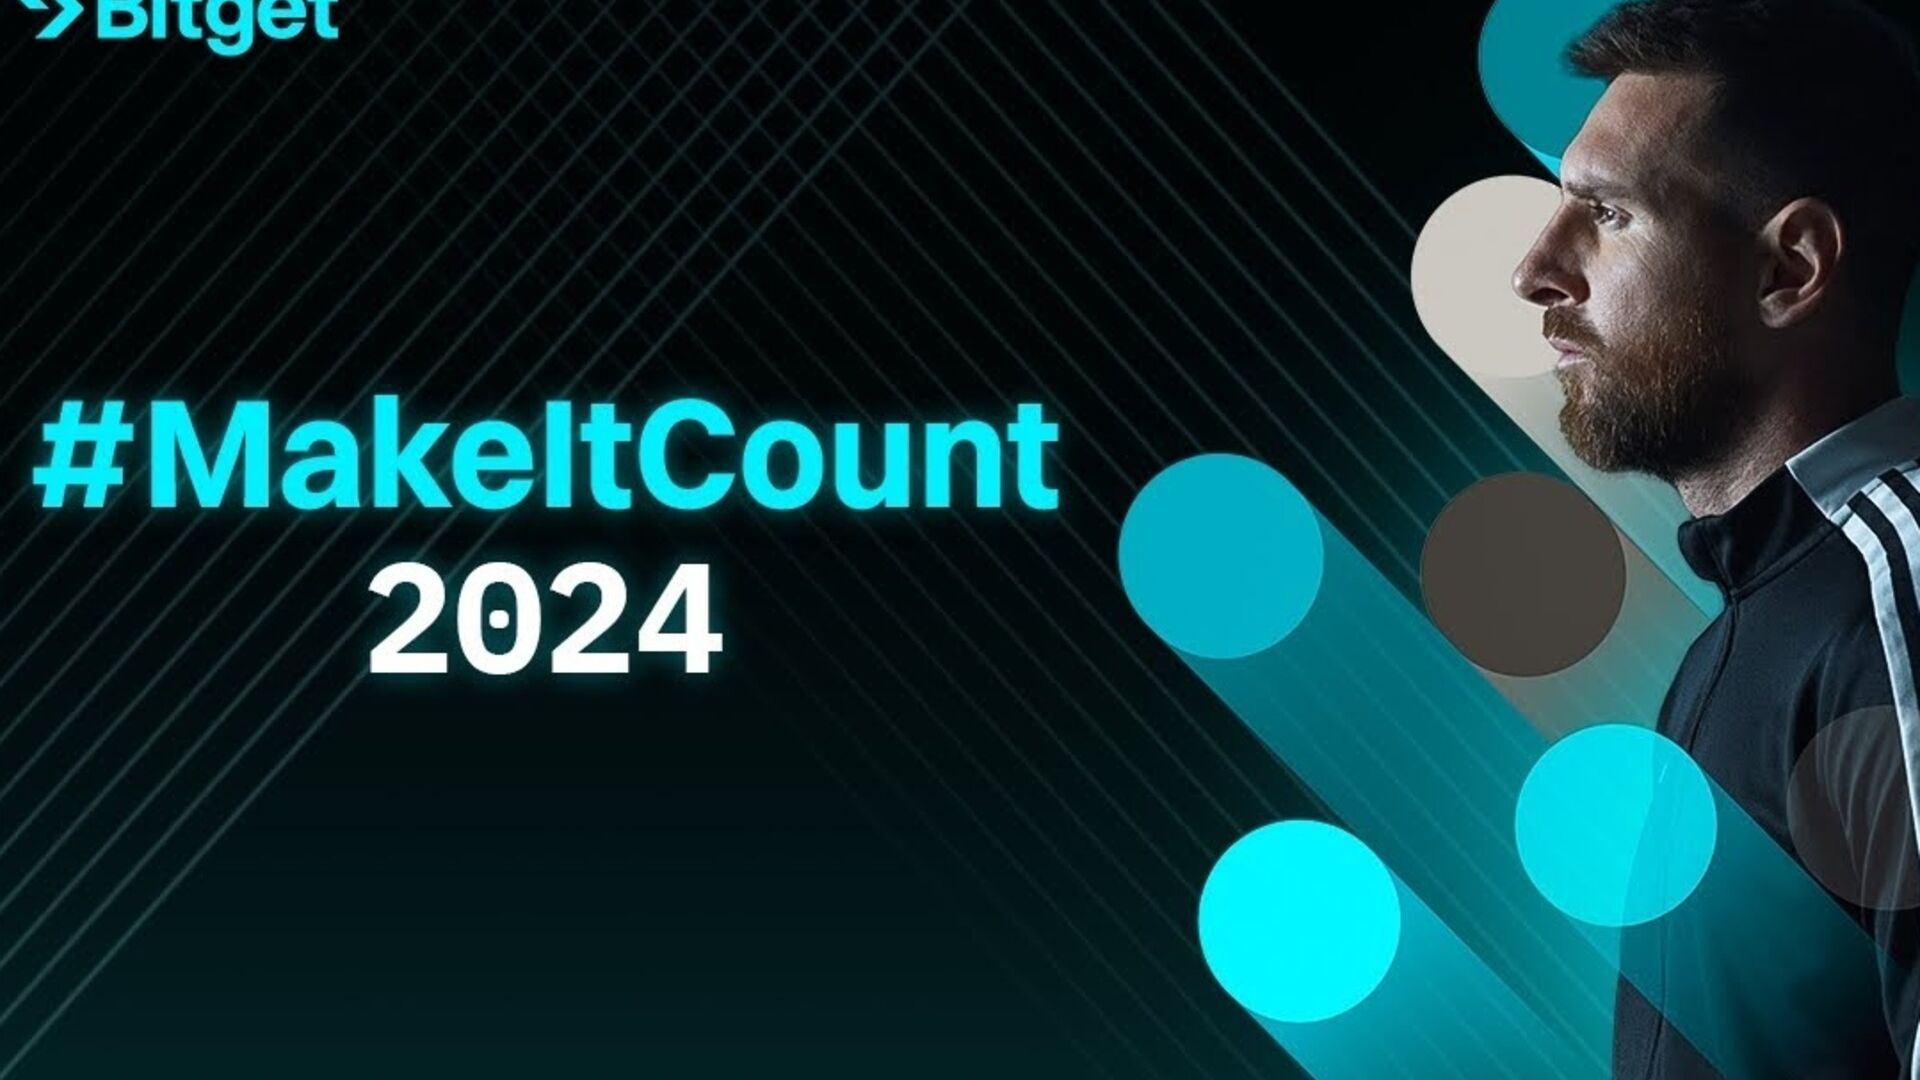 莱昂内尔·梅西：电影 #MakeItCount 2024 象征着加密货币交易所 Bitget 和阿根廷足球运动员共享的基本价值观